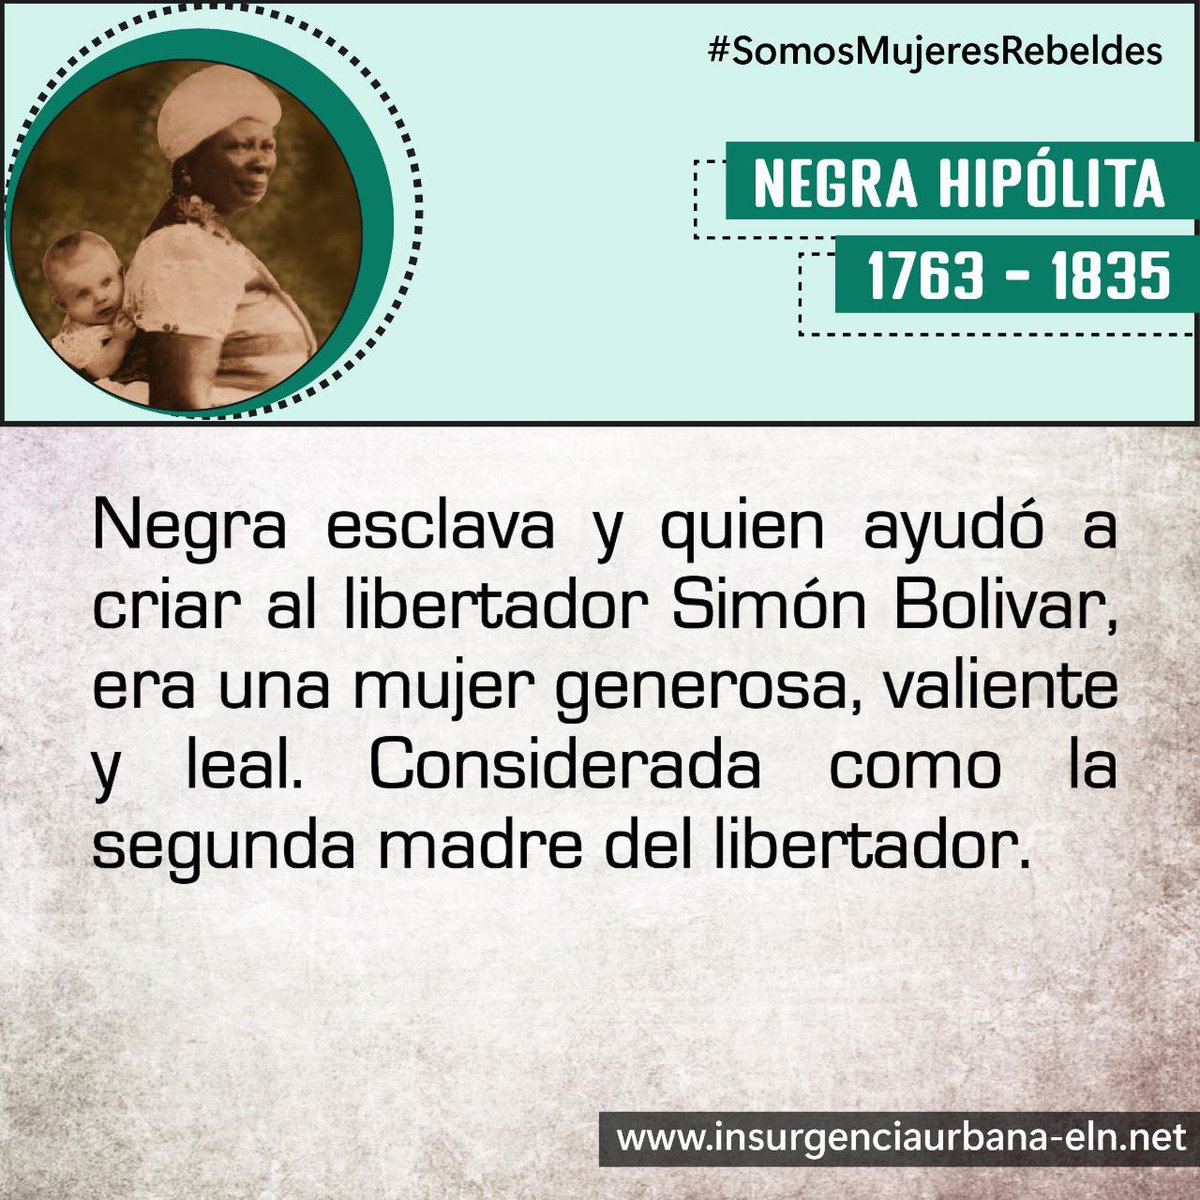 #SomosMujeresRebeldes

NEGRA HIPÓLITA
🙌🏾Considerada como la segunda madre de Simón Bolivar

#SiempreJuntoAlPueblo
#InsurgenciaUrbana
#ELN60Años